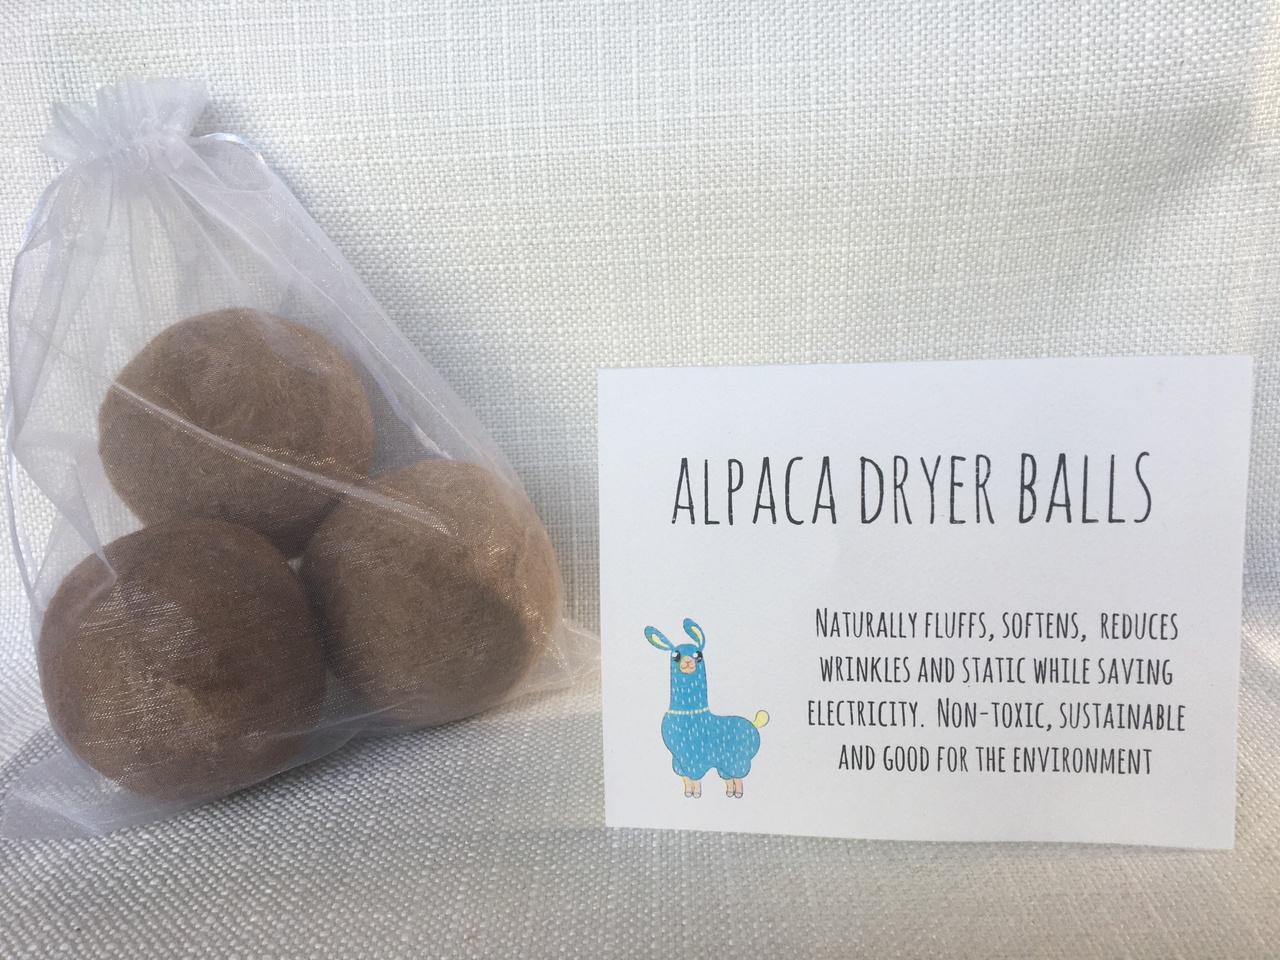 Alpaca dryer balls